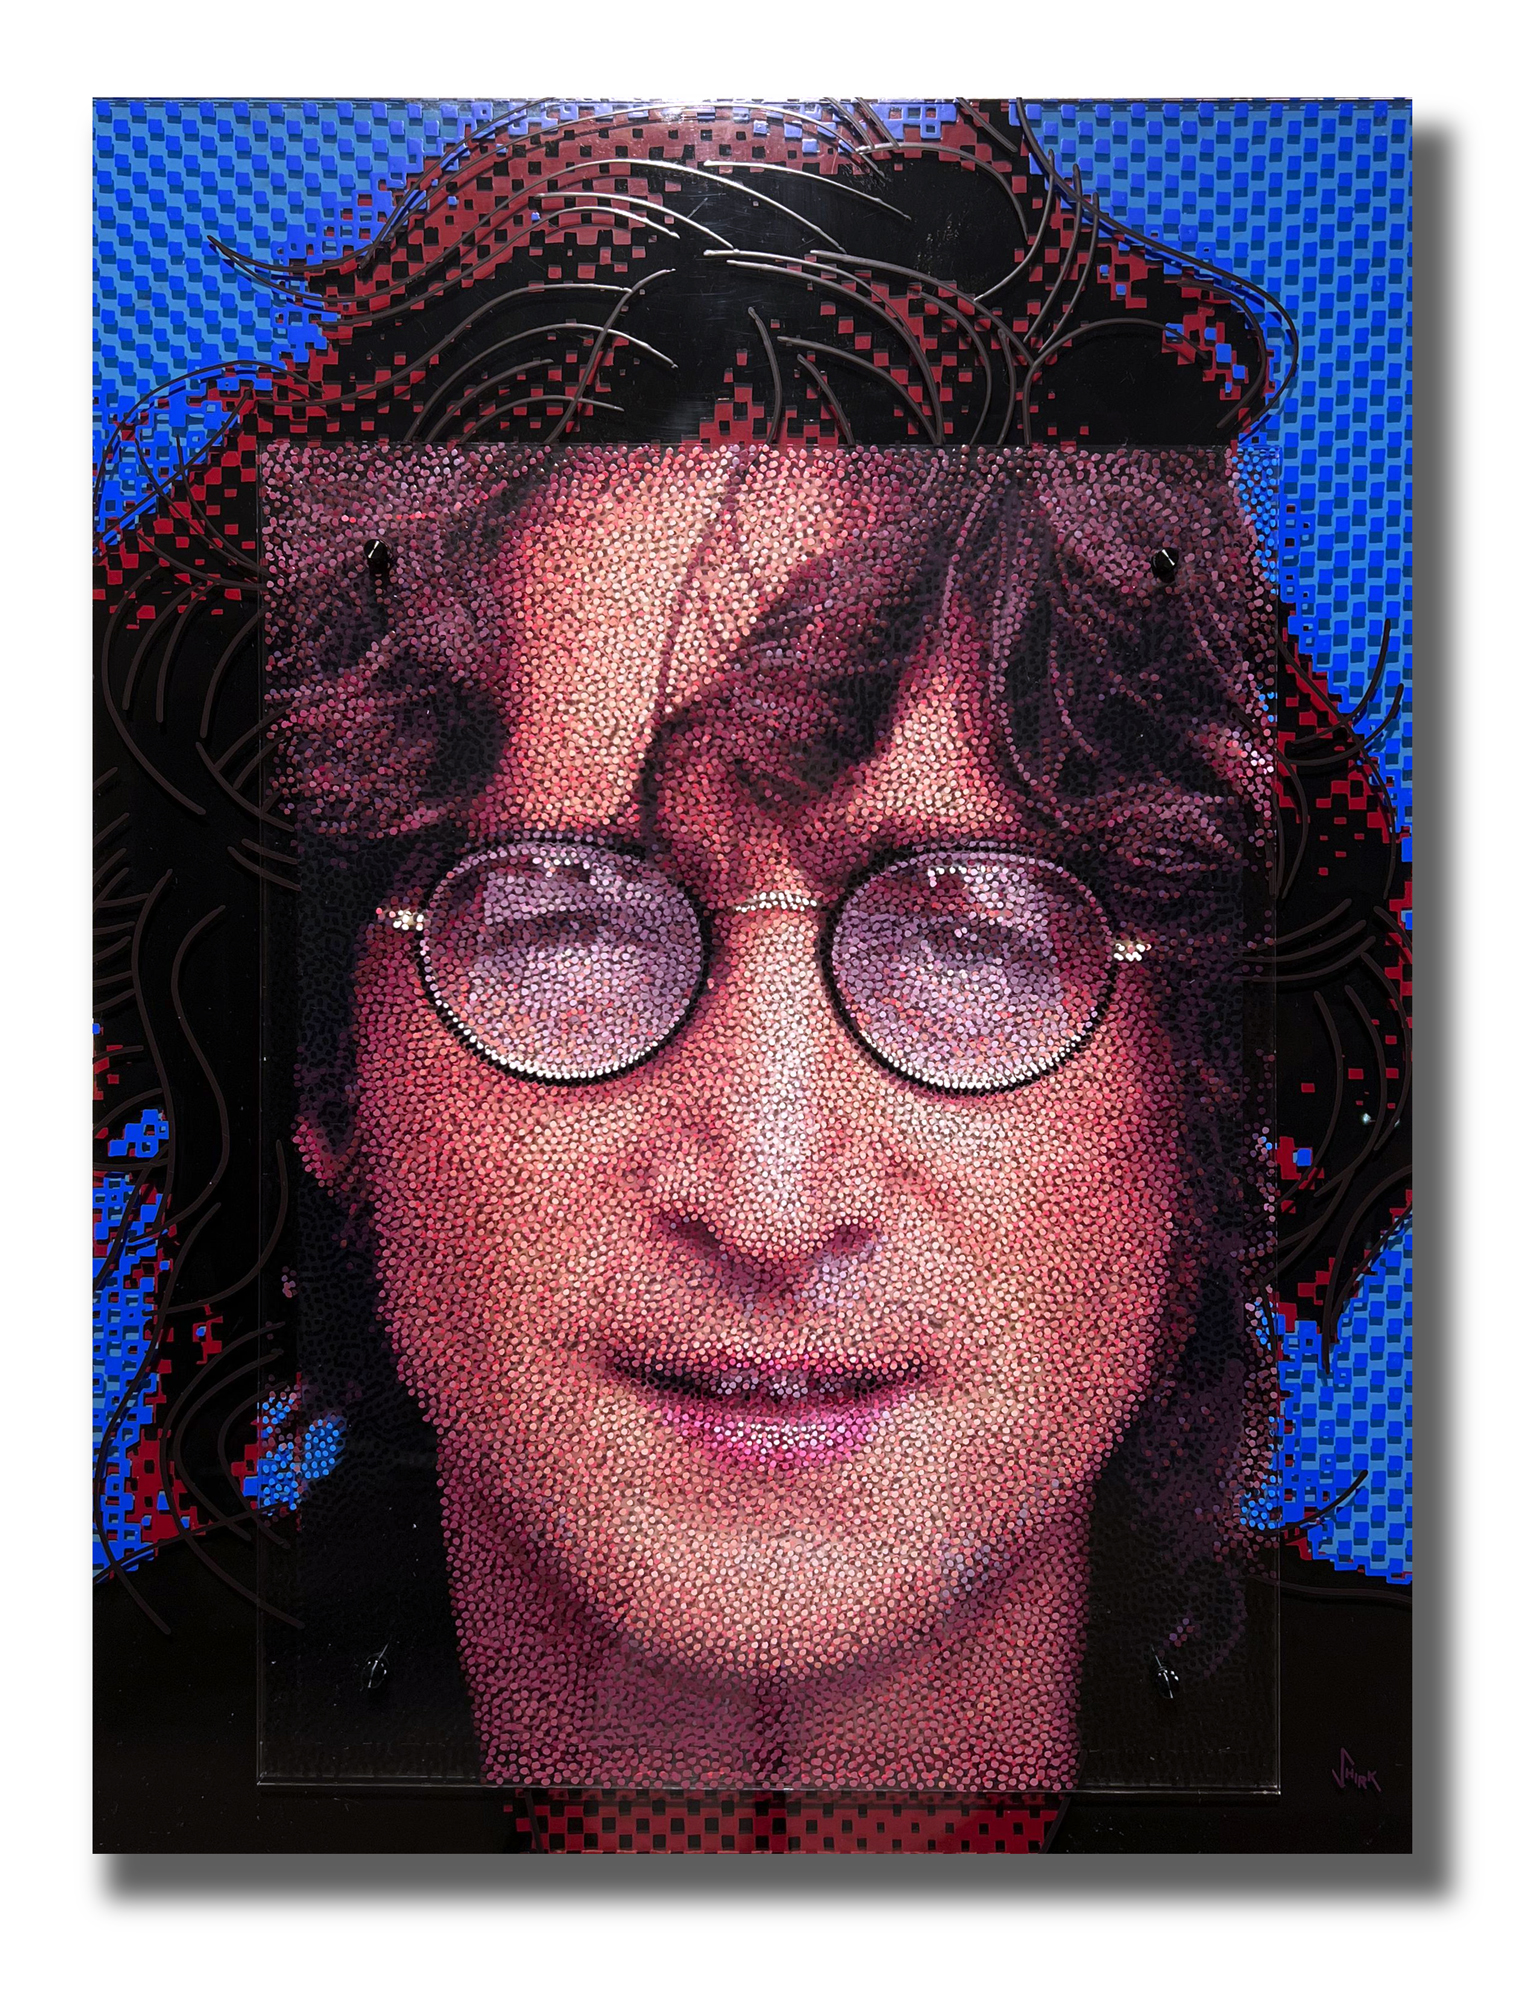 Neo-Pointilist Painting Of John Lennon